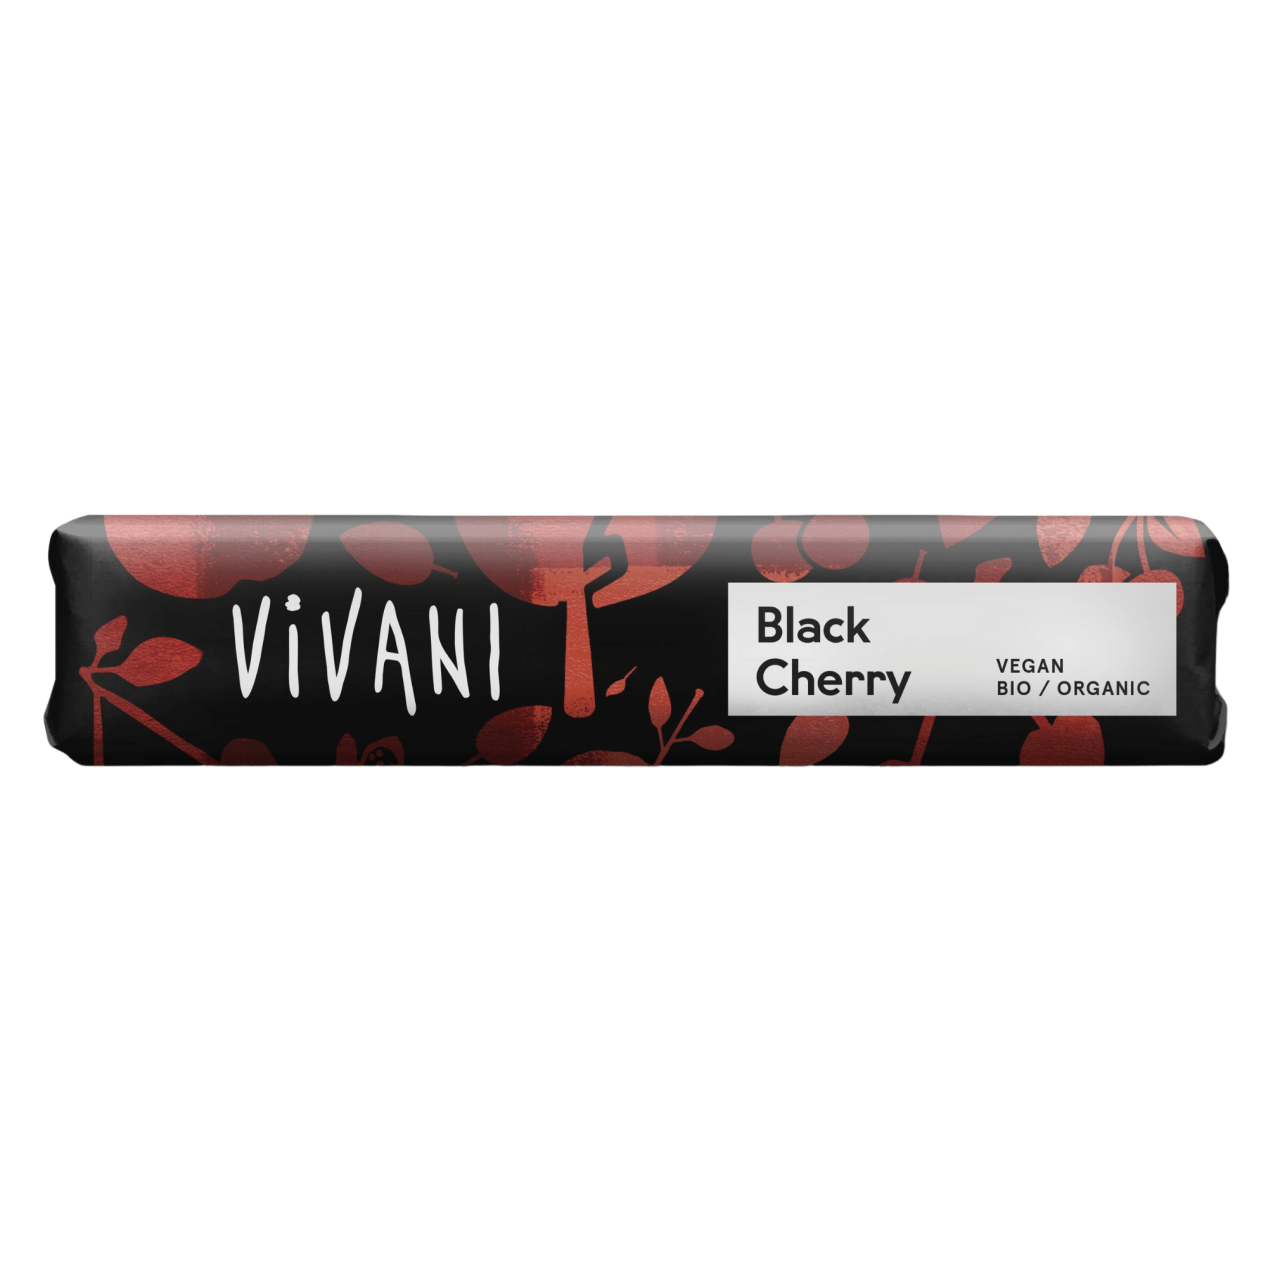 Bio Black Cherry Schokoriegel von Vivani